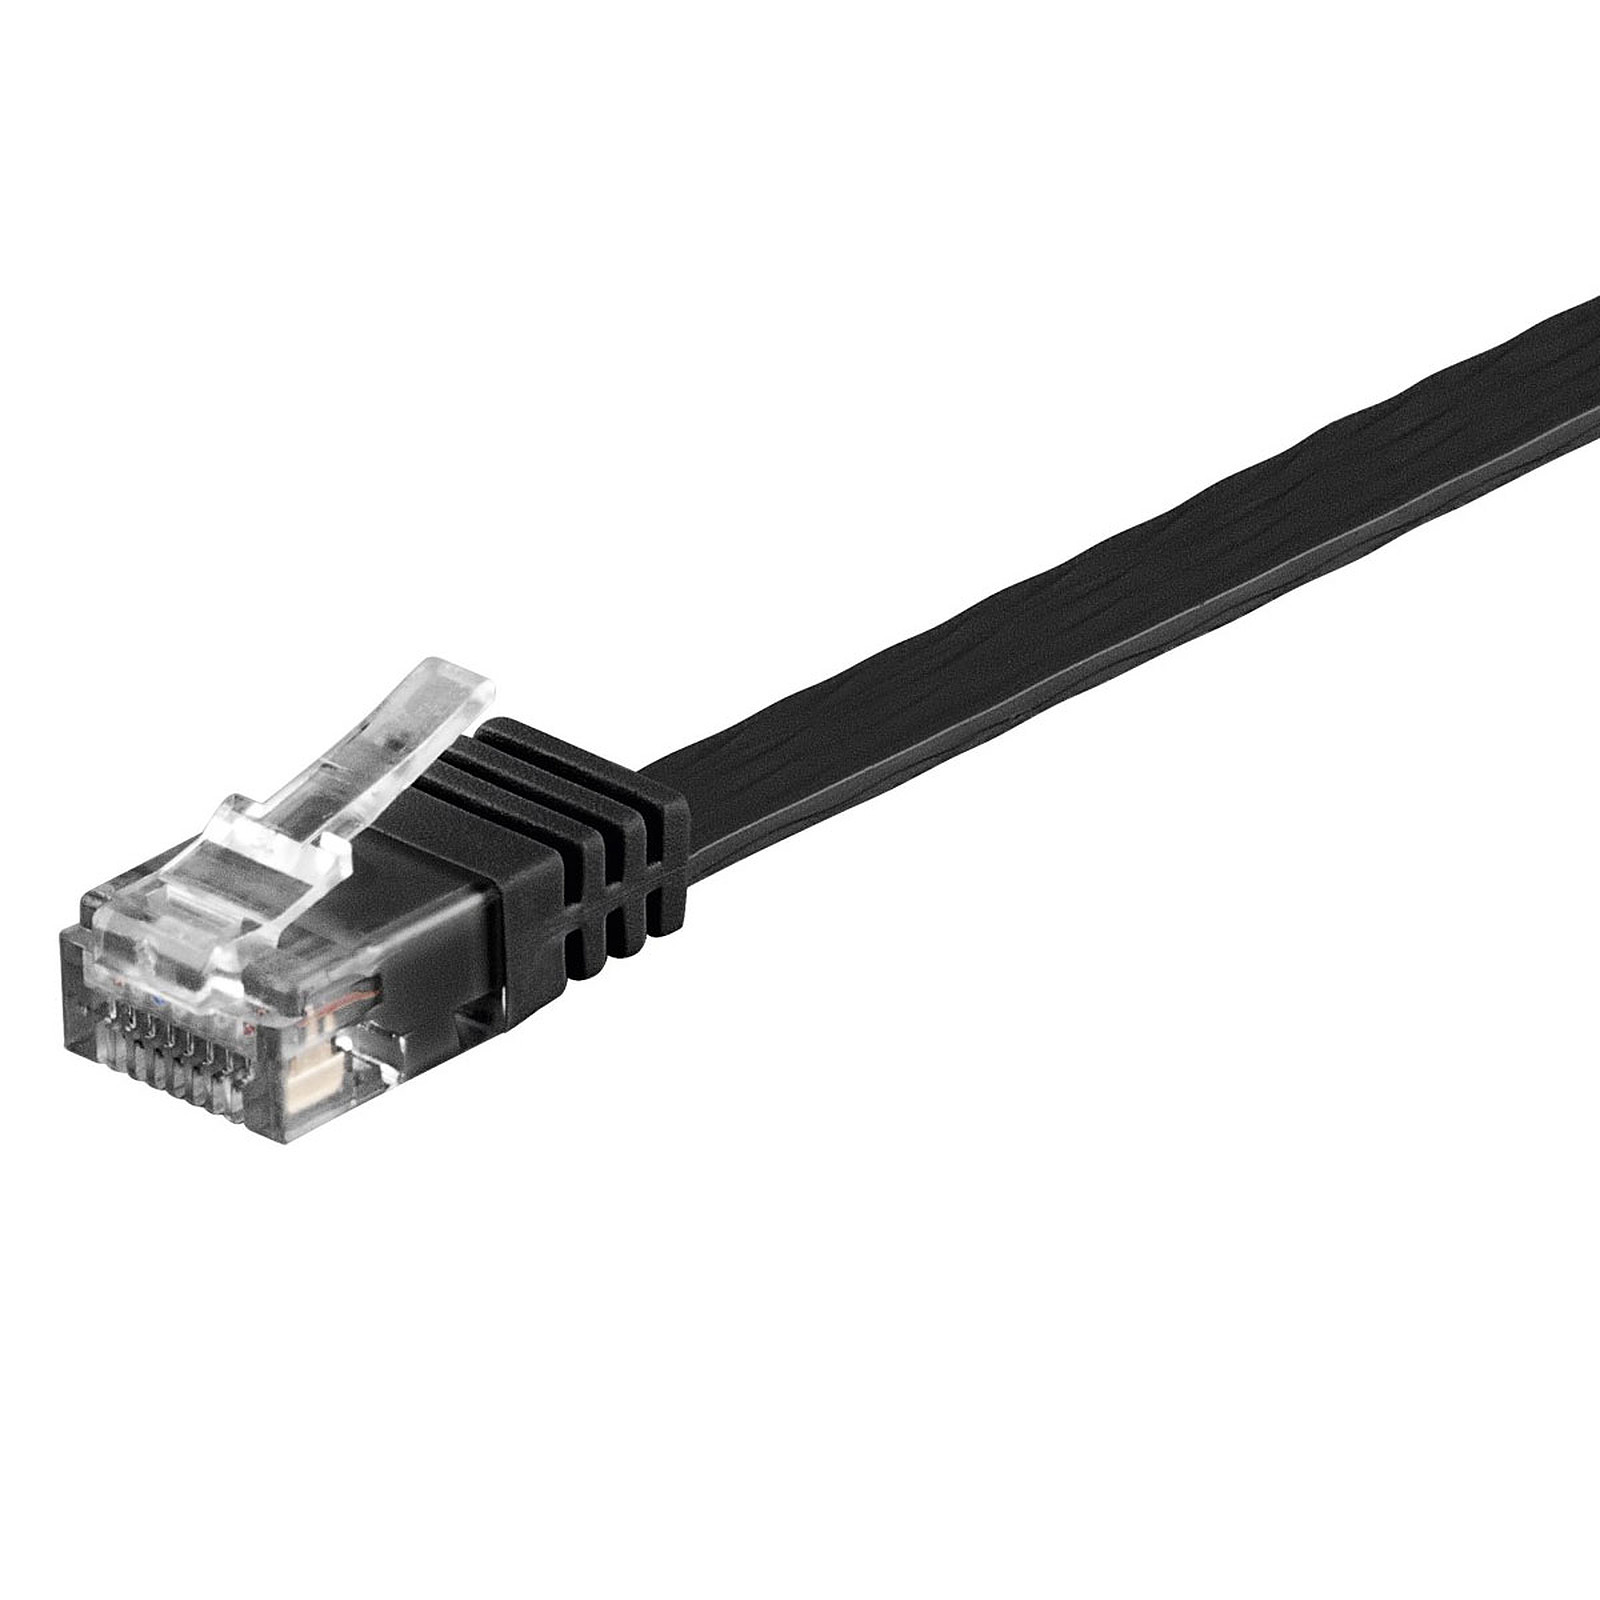 Cable RJ45 plat categorie 6 U/UTP 1 m (Noir) - Cable RJ45 Generique